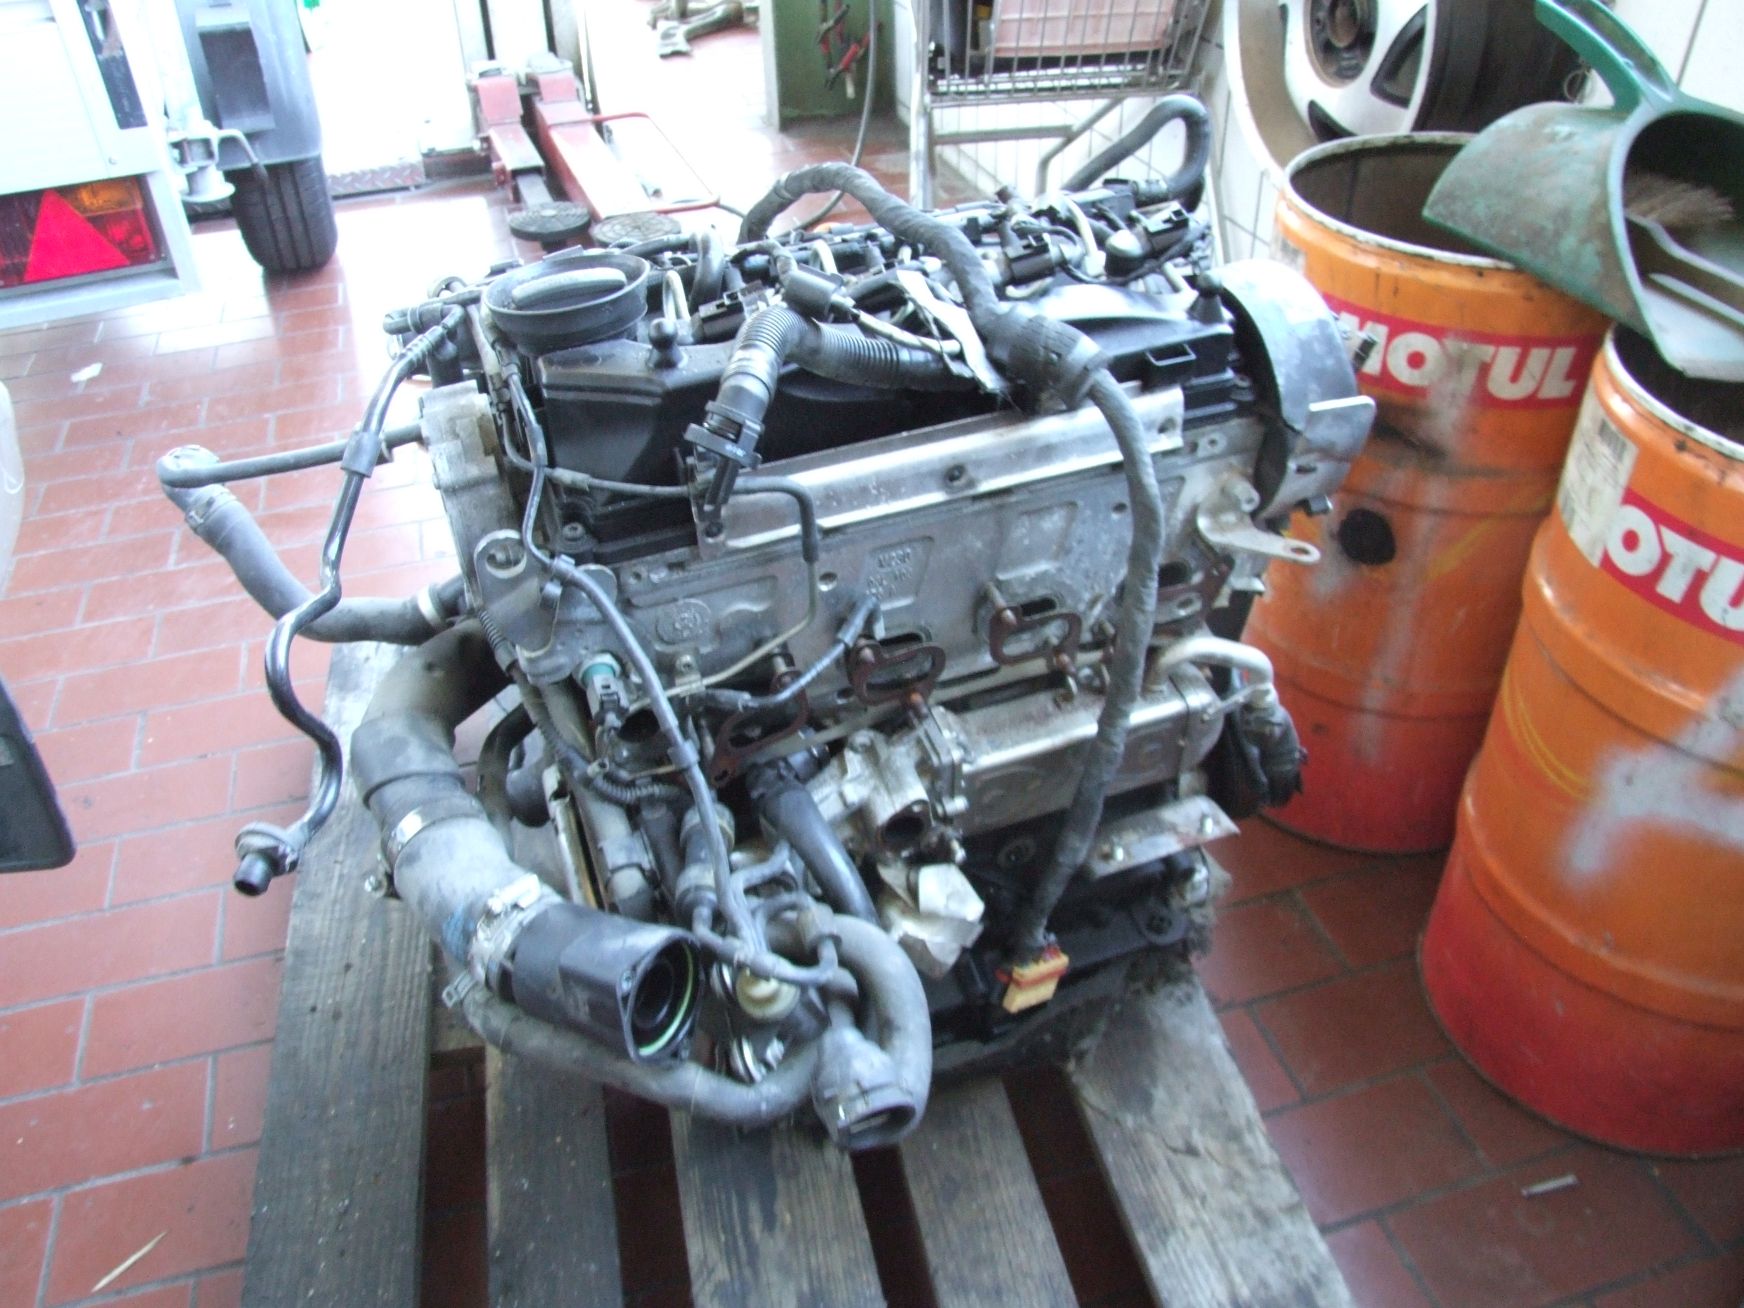 Motor aus VW Golf 6 Code CAYC VAG (gebraucht)